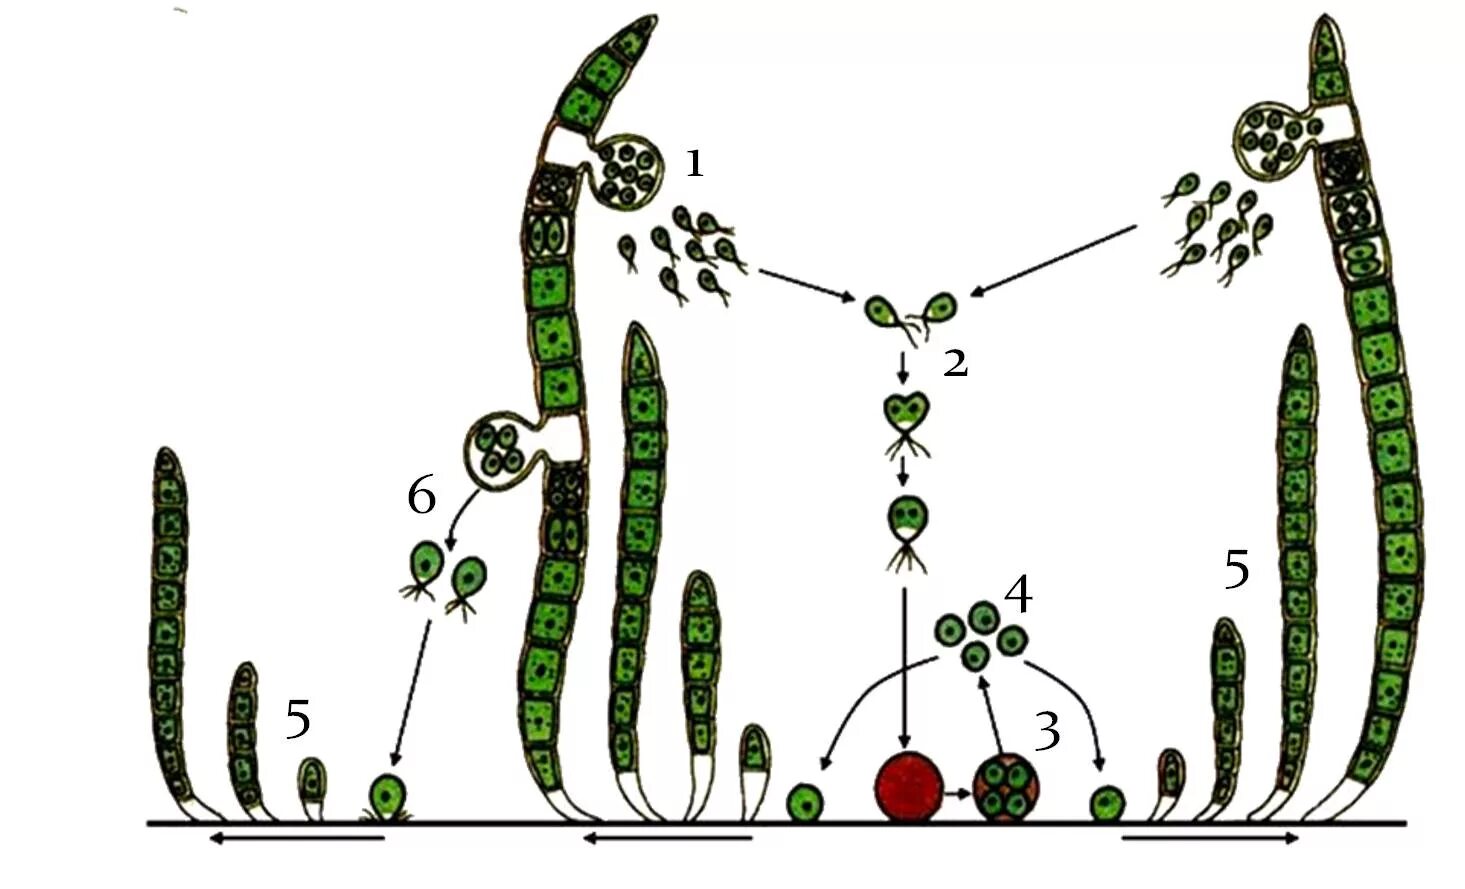 Улотрикс цикл размножения. Размножение водорослей схема улотрикс. Цикл развития улотрикса схема. Жизненный цикл улотрикса схема. Стадия жизненного цикла водорослей